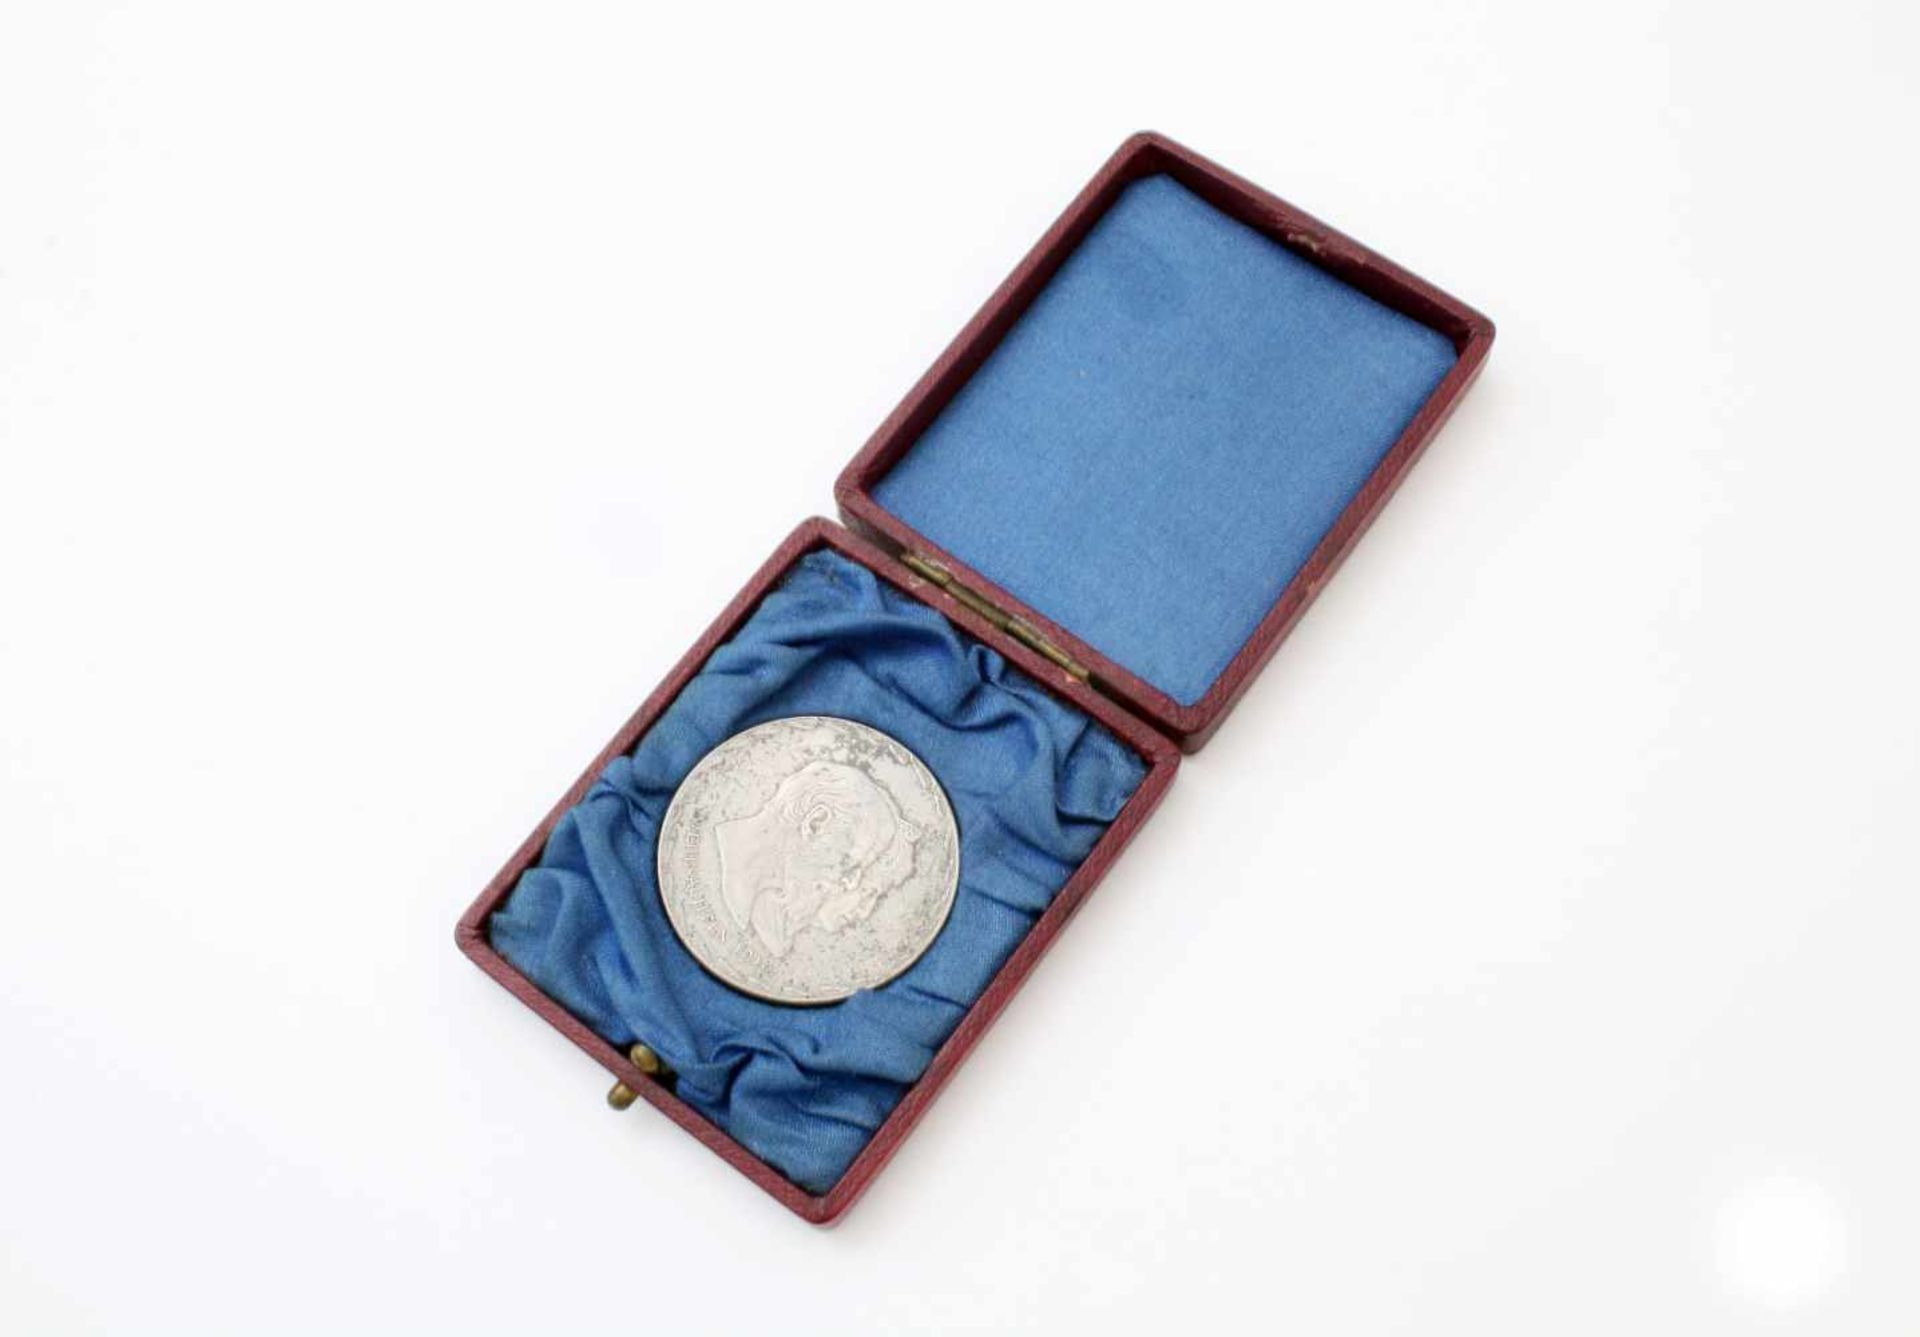 Medaille zur "Erinnerung an die goldene Hochzeit 20.02.1918" - Bayern, Ludwig III. Im Originaletui.